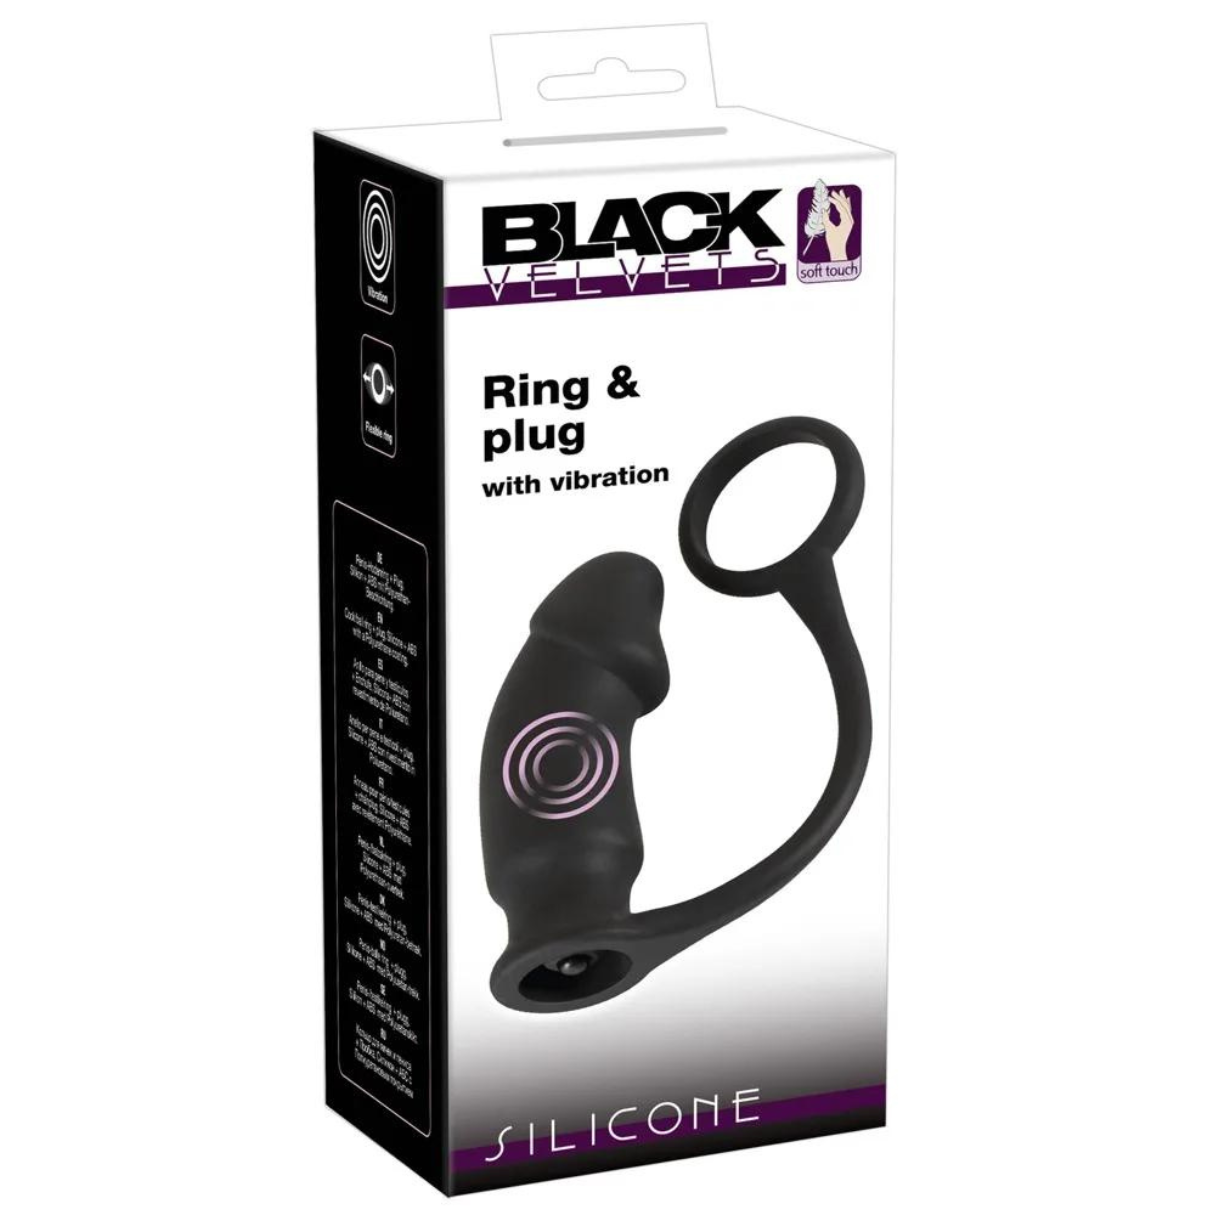 VELVETS plug Vibrator Ring & vibration with BLACK